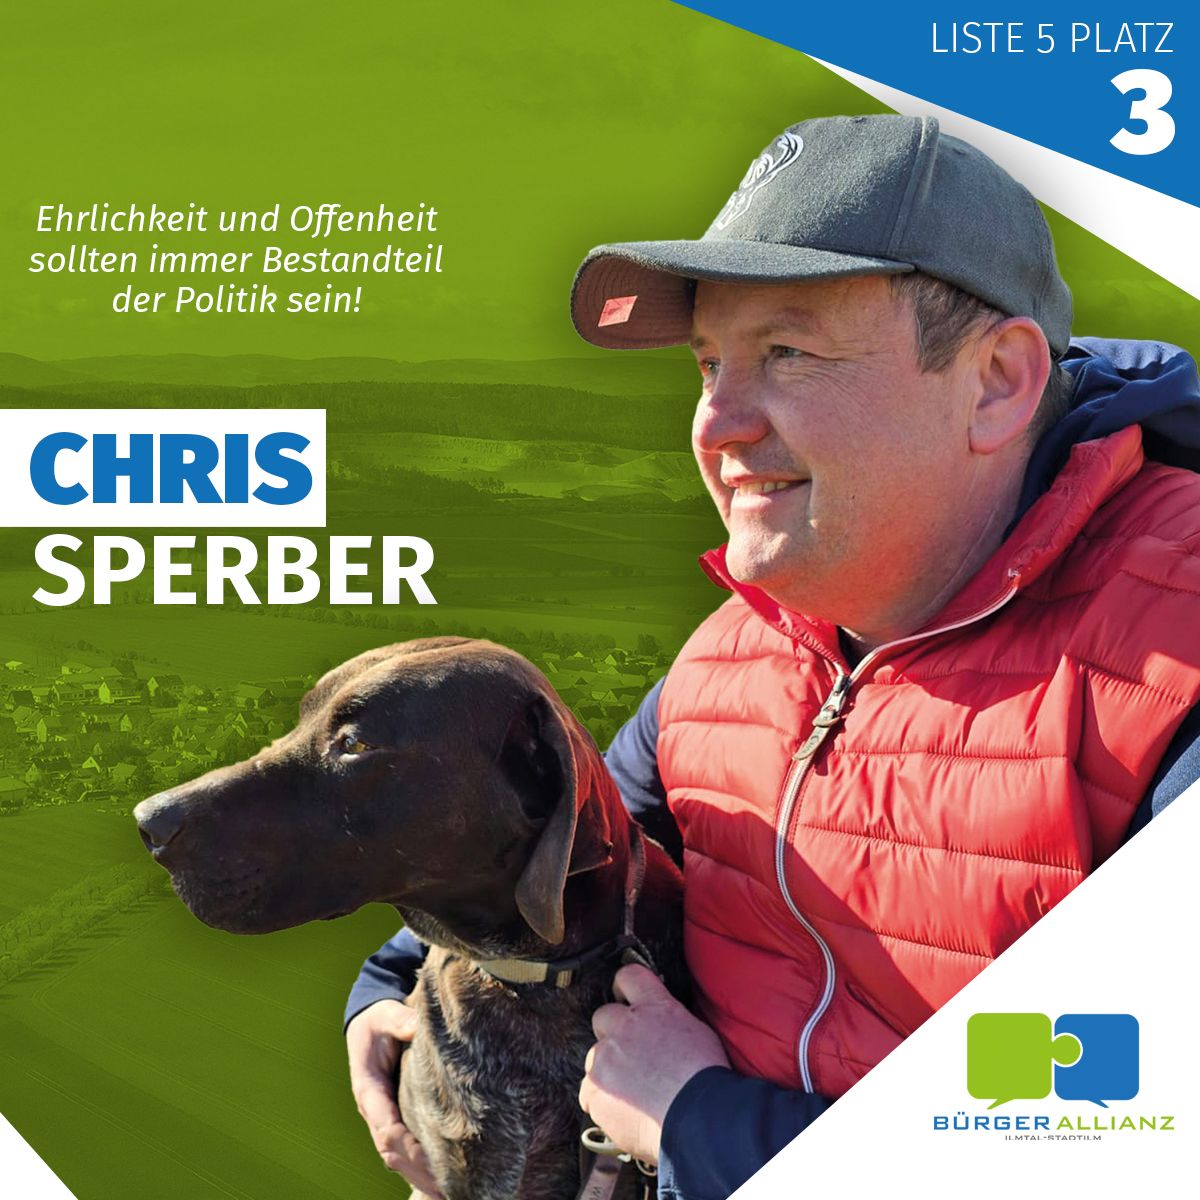 Chris Sperber